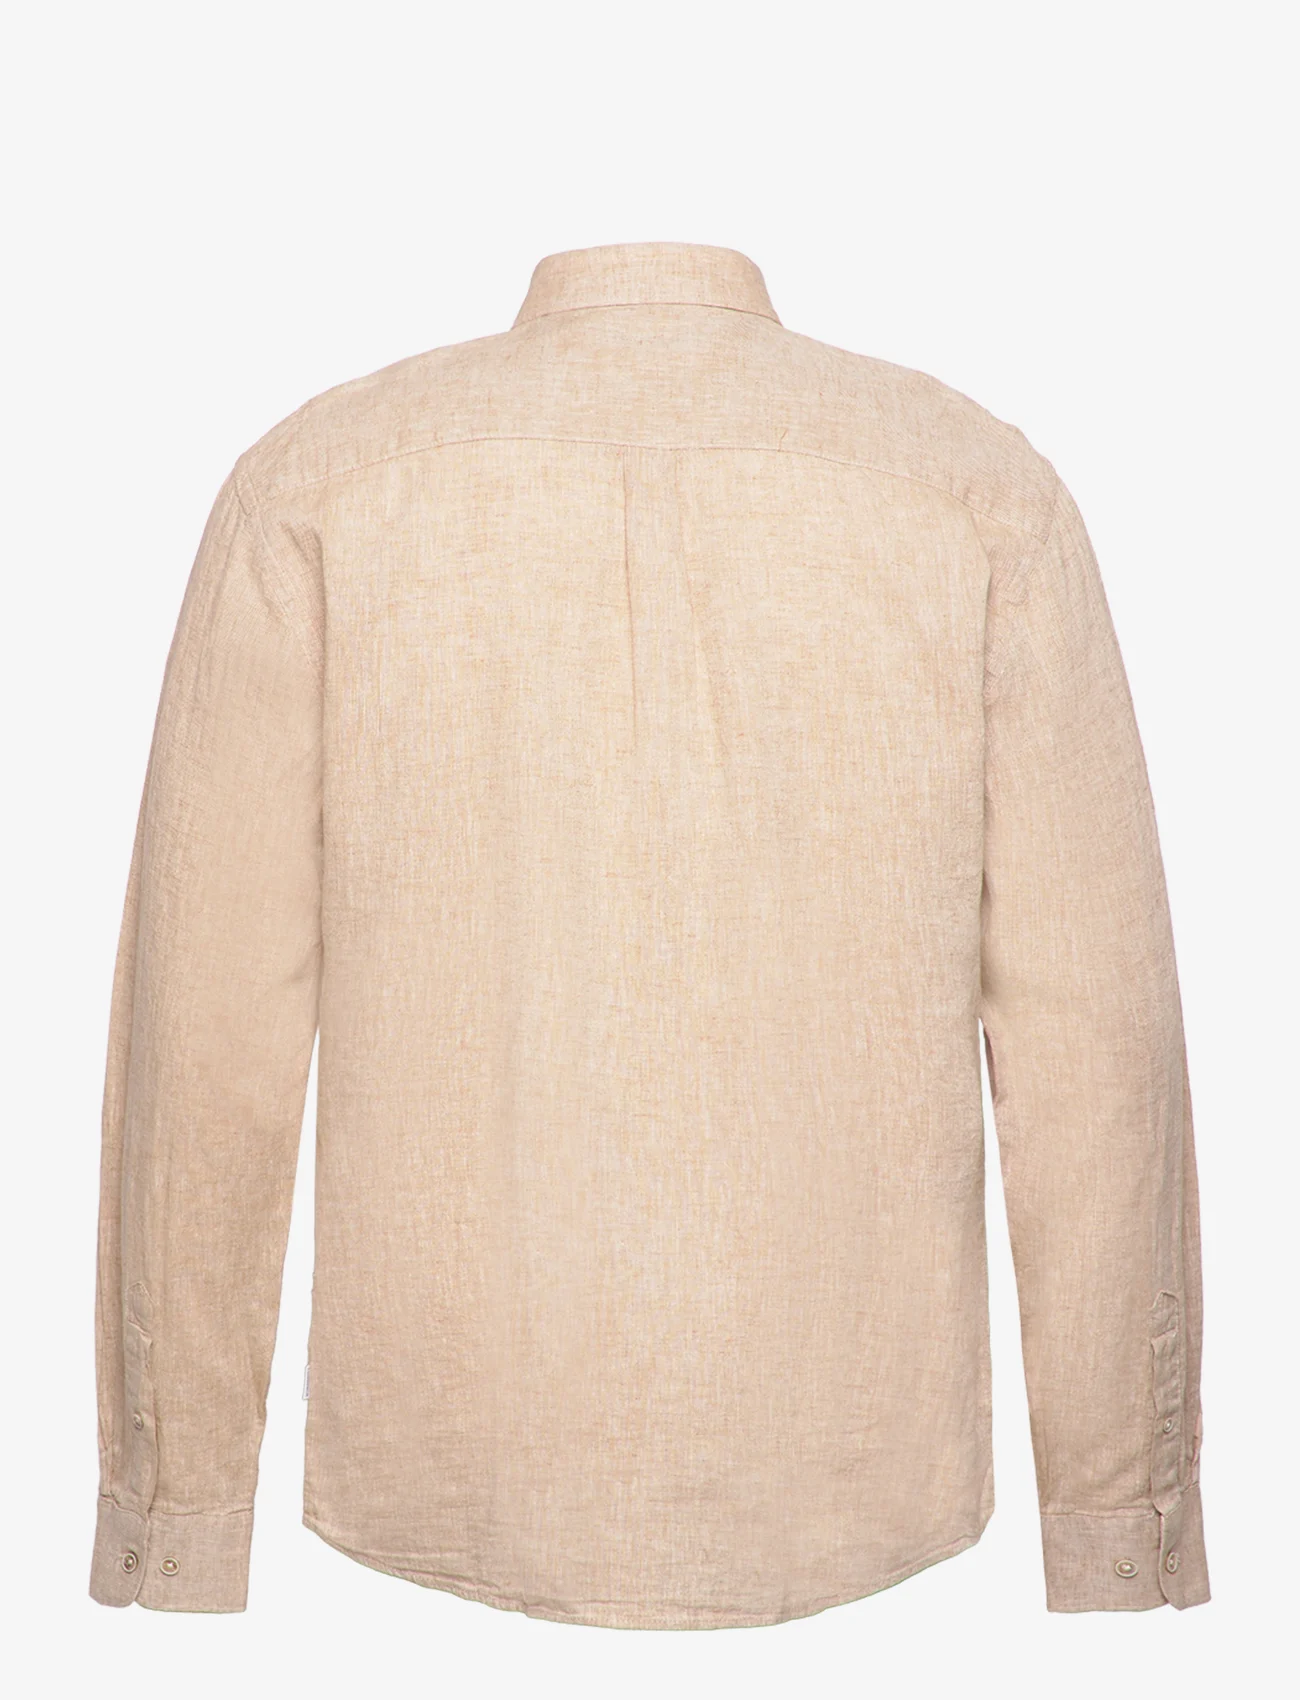 Lindbergh - Cotton/linen shirt L/S - pellavakauluspaidat - mid sand - 1